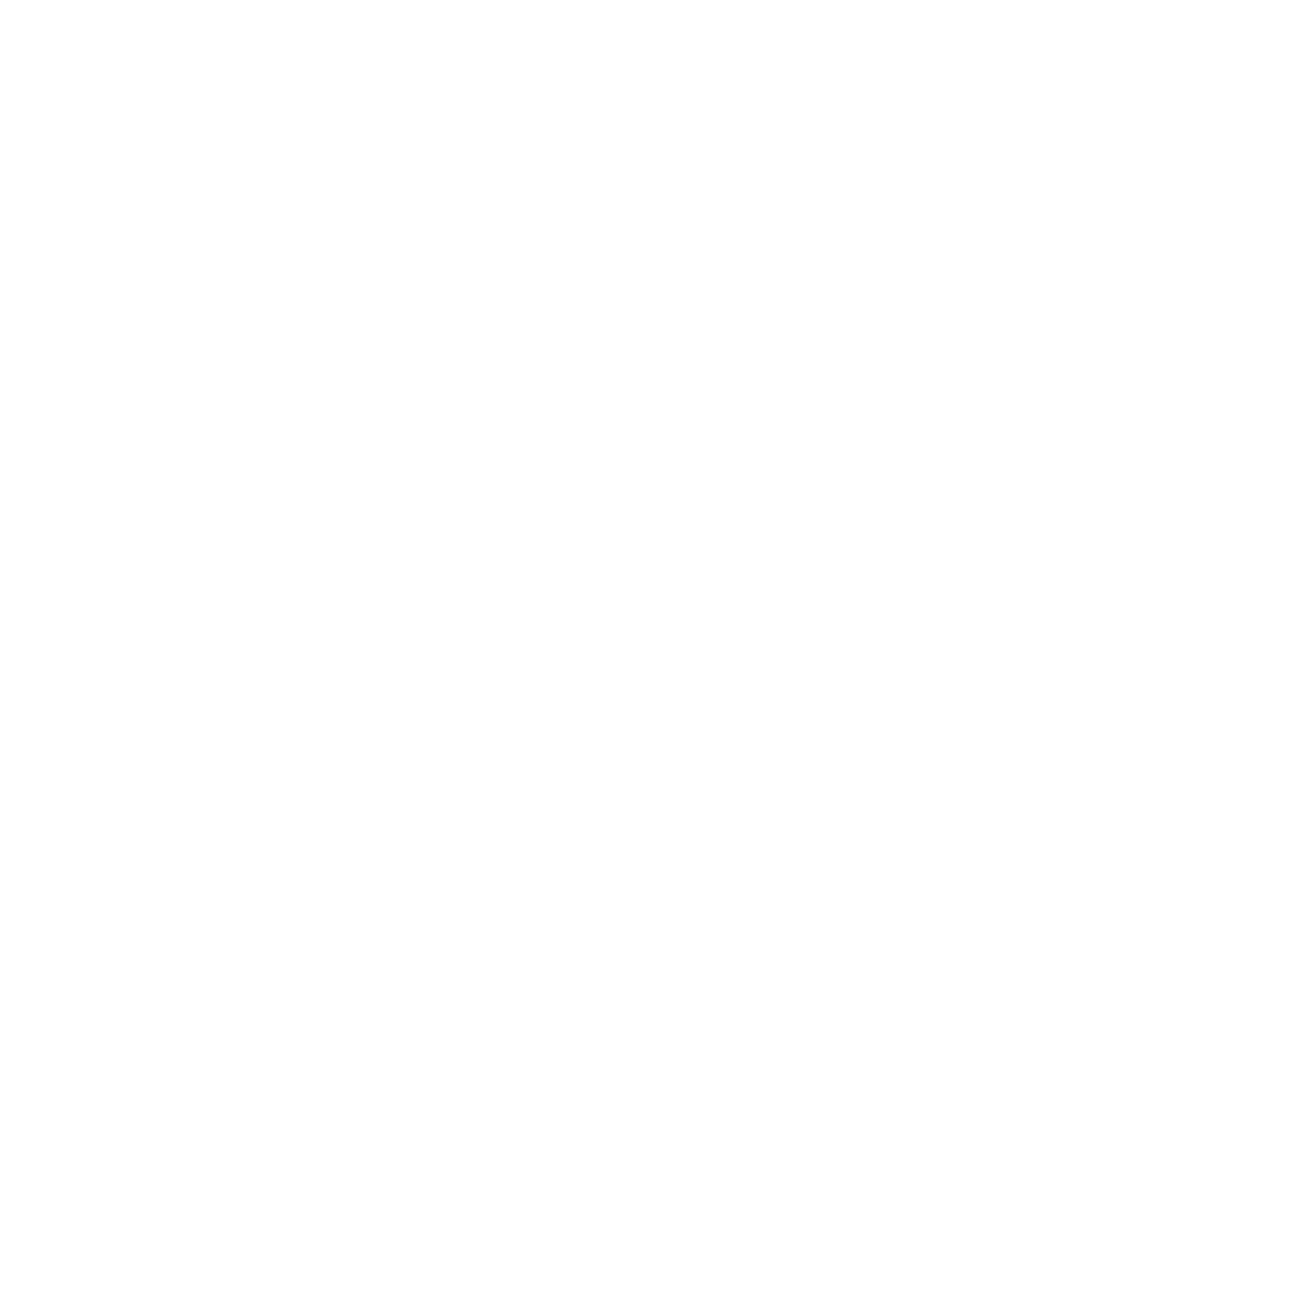 Golf Carts 2 You - logo